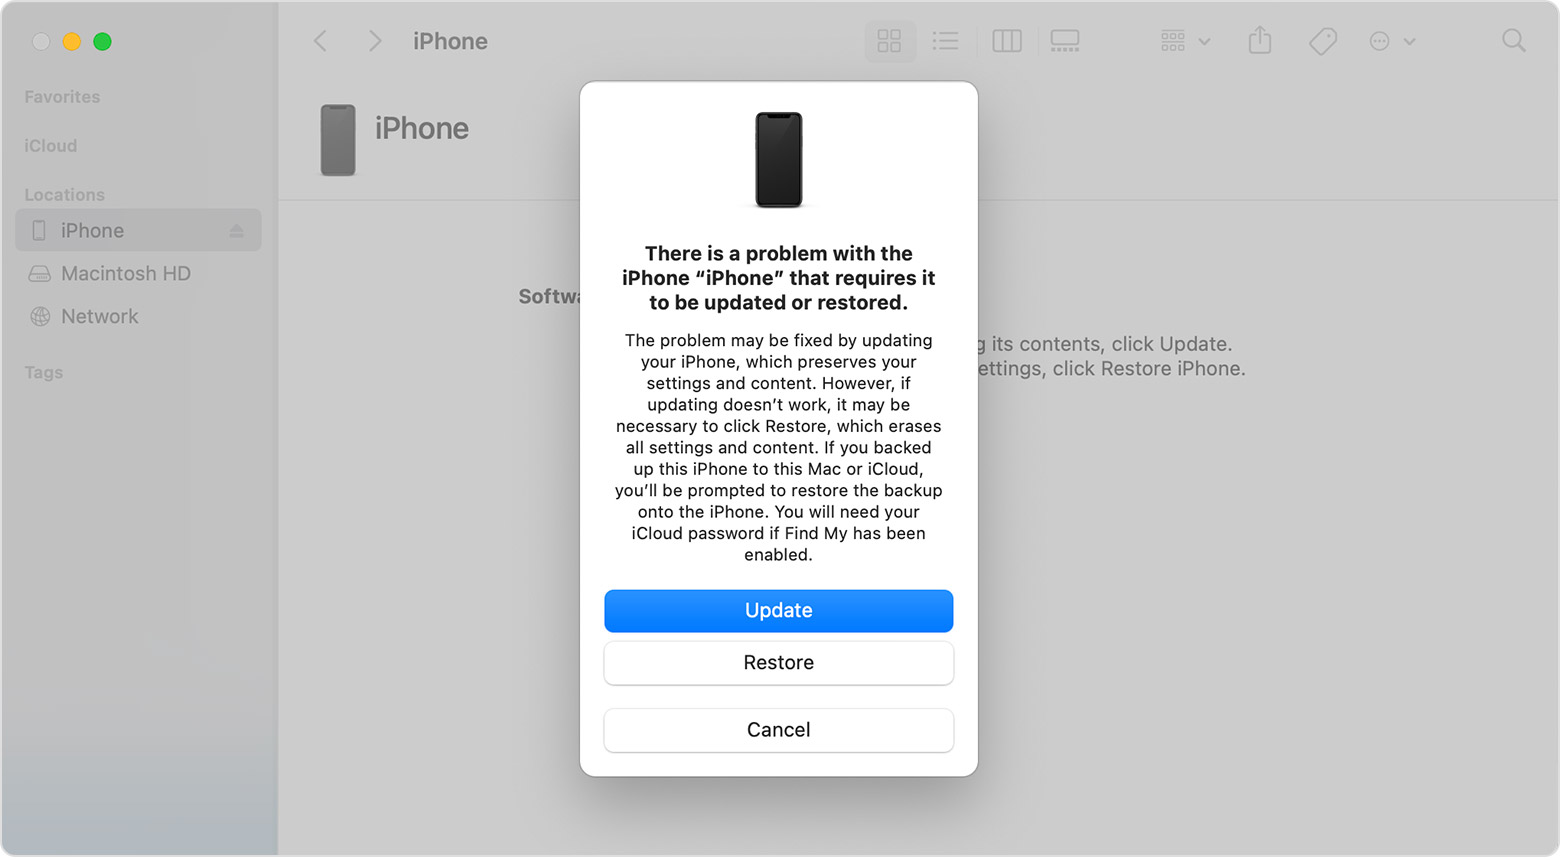 Cửa sổ Finder trên máy Mac đang hiển thị các tùy chọn để khôi phục hoặc cập nhật iPhone của bạn